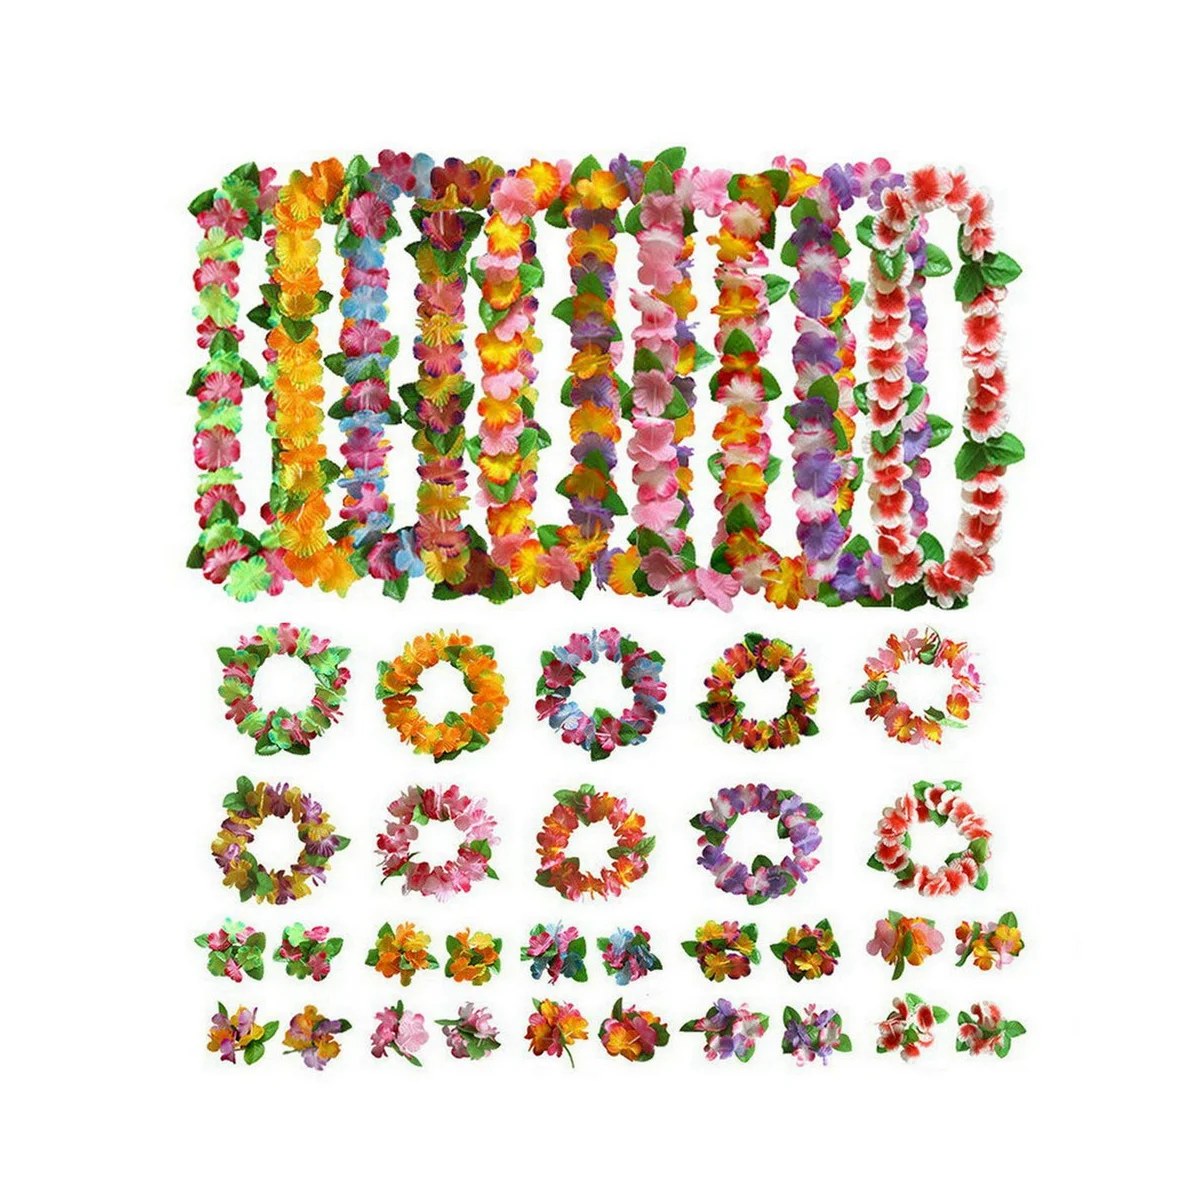 

10 комплектов, гавайский цветок Leis тропическая люлия, аксессуары Hula, гирлянда, ожерелья, браслеты для Гавайских украшений